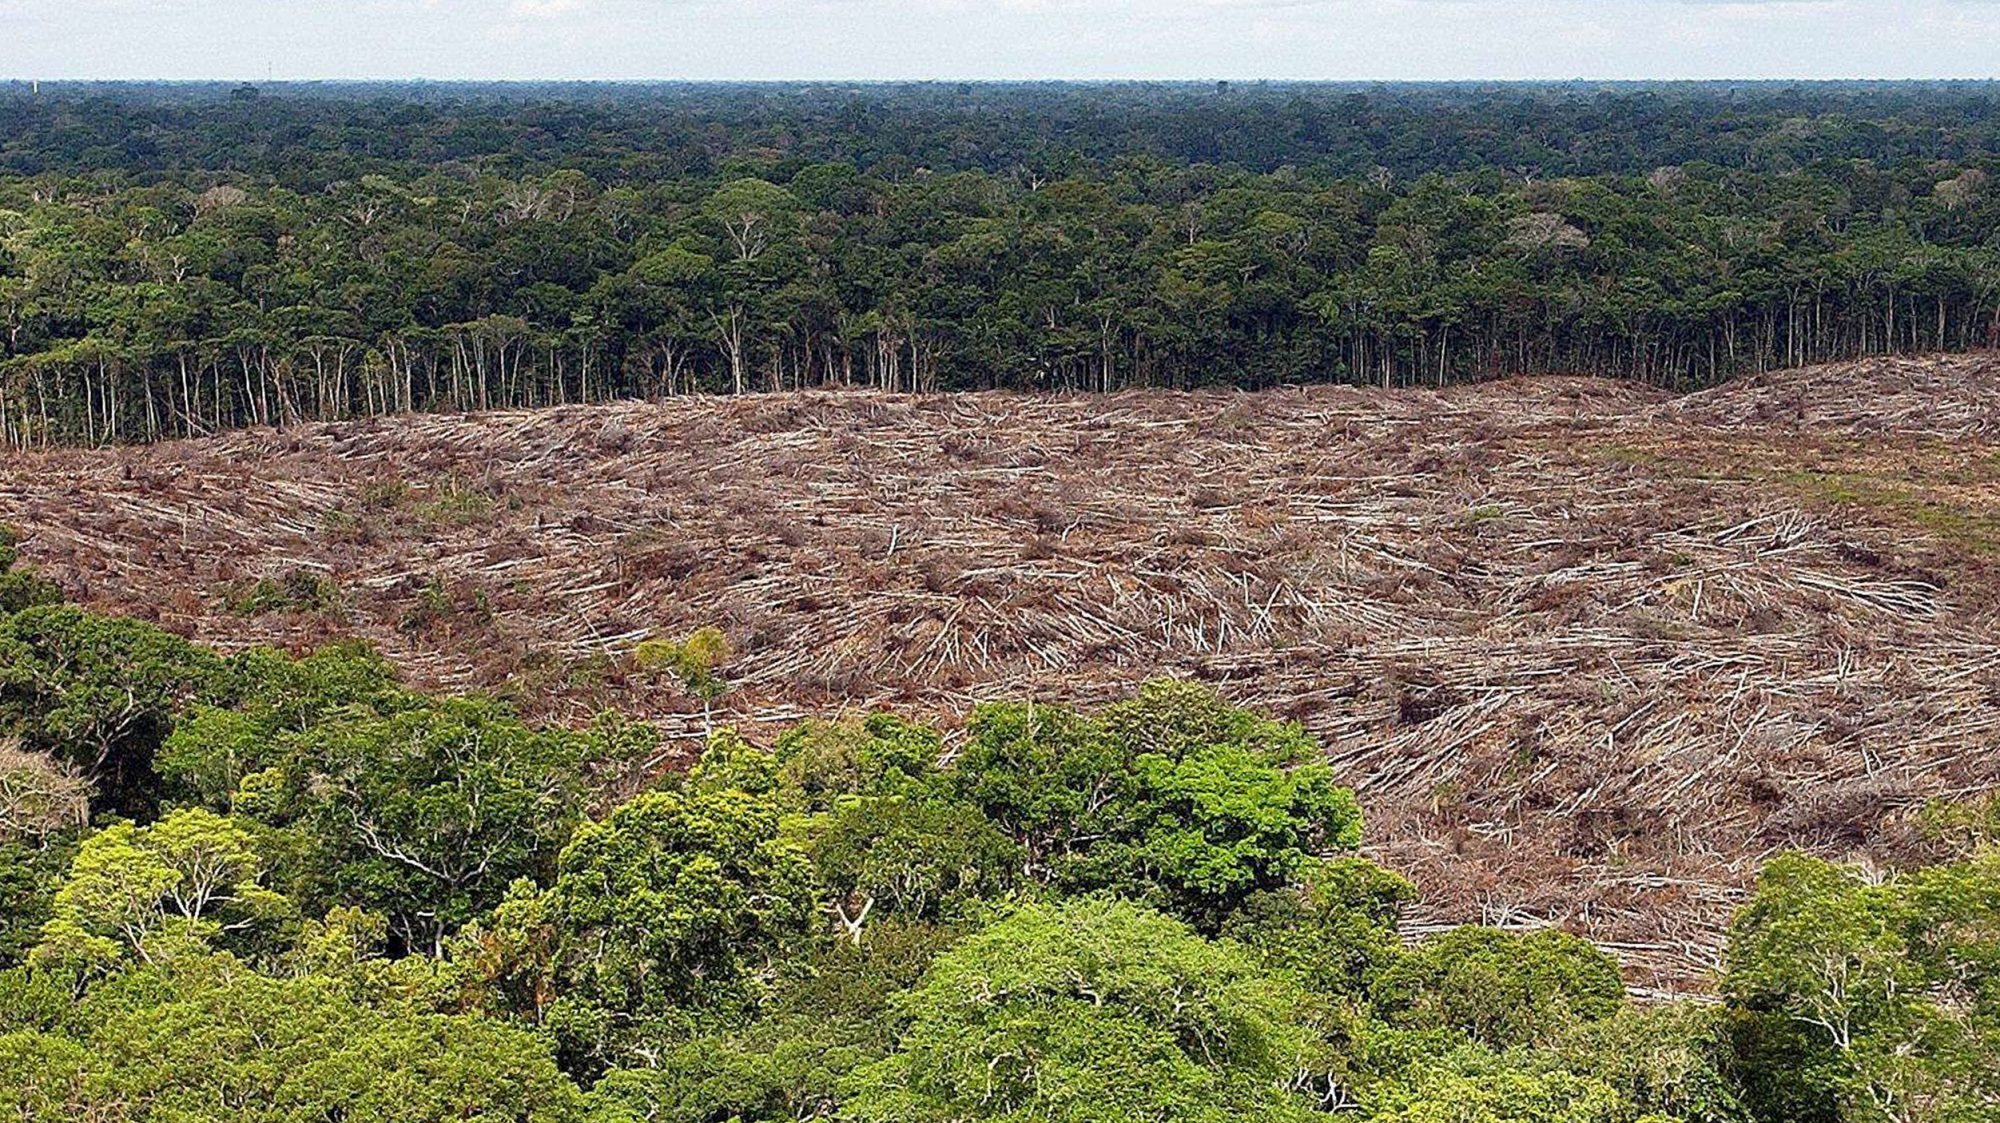 &quot;Em termos absolutos, florestas públicas não destinadas foram as mais atingidas: tiveram mais de 85% na área desflorestada&quot;